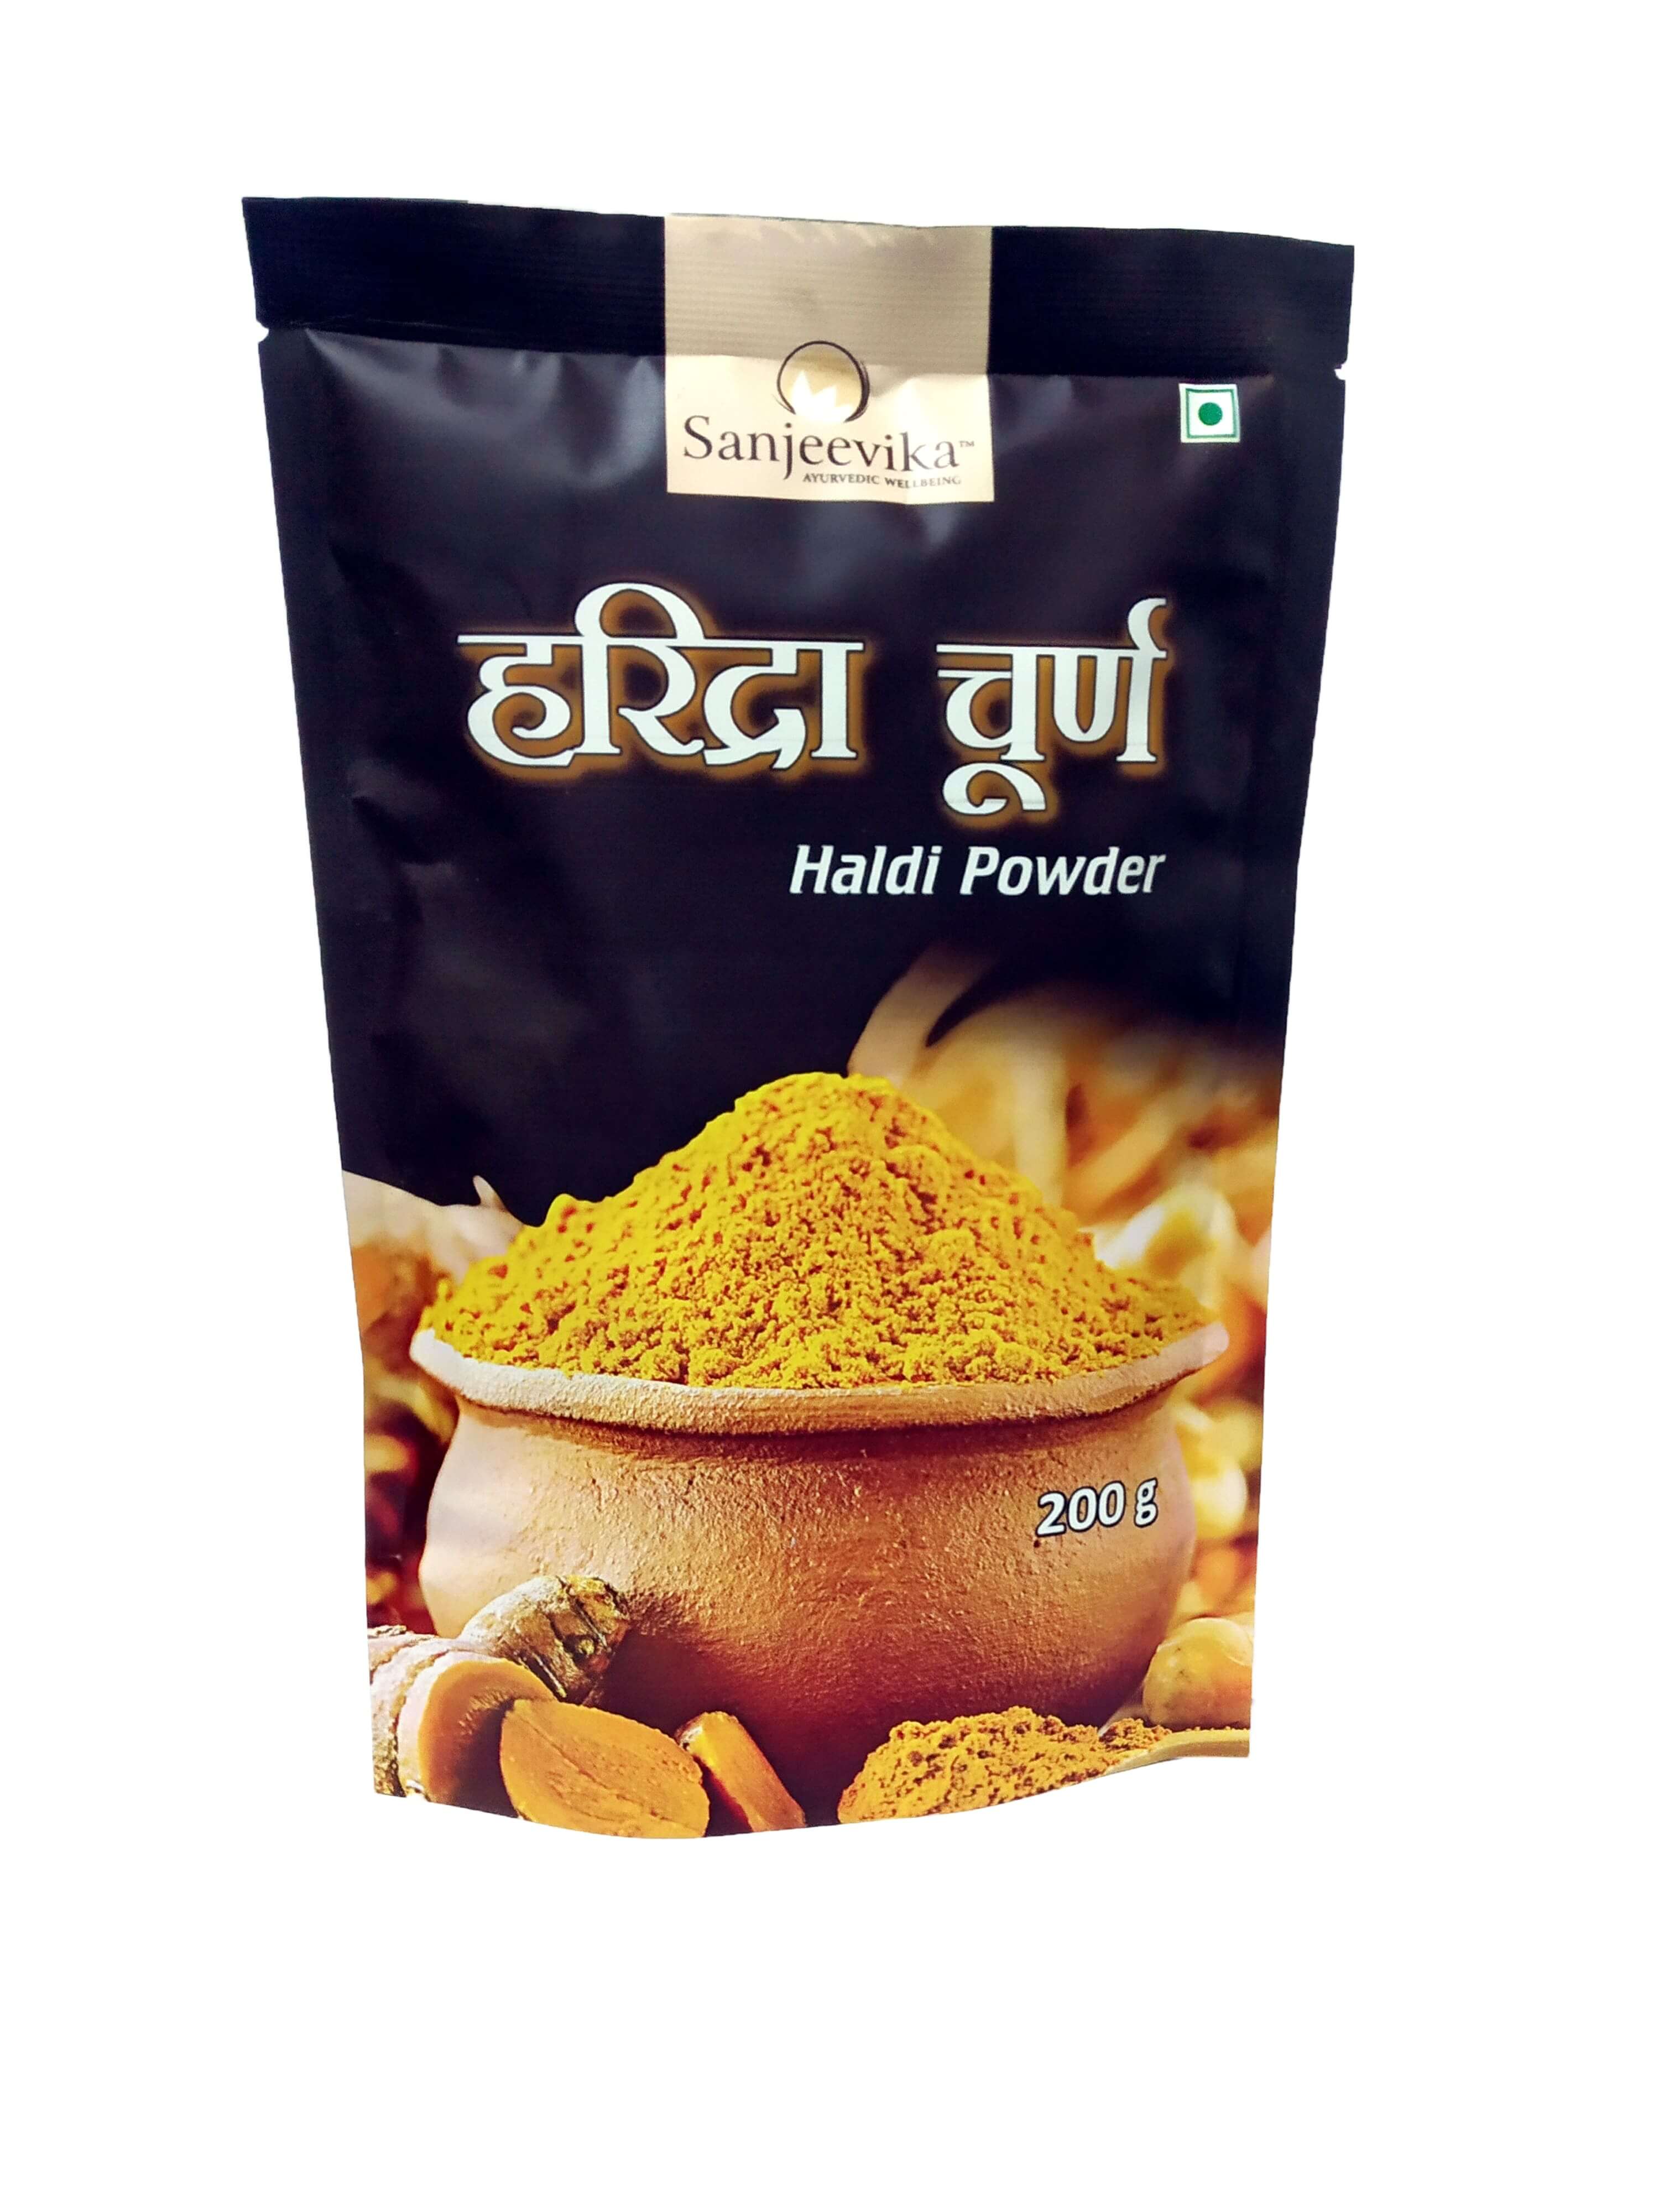 Triphla Churna (Herbal Digestive Powder)